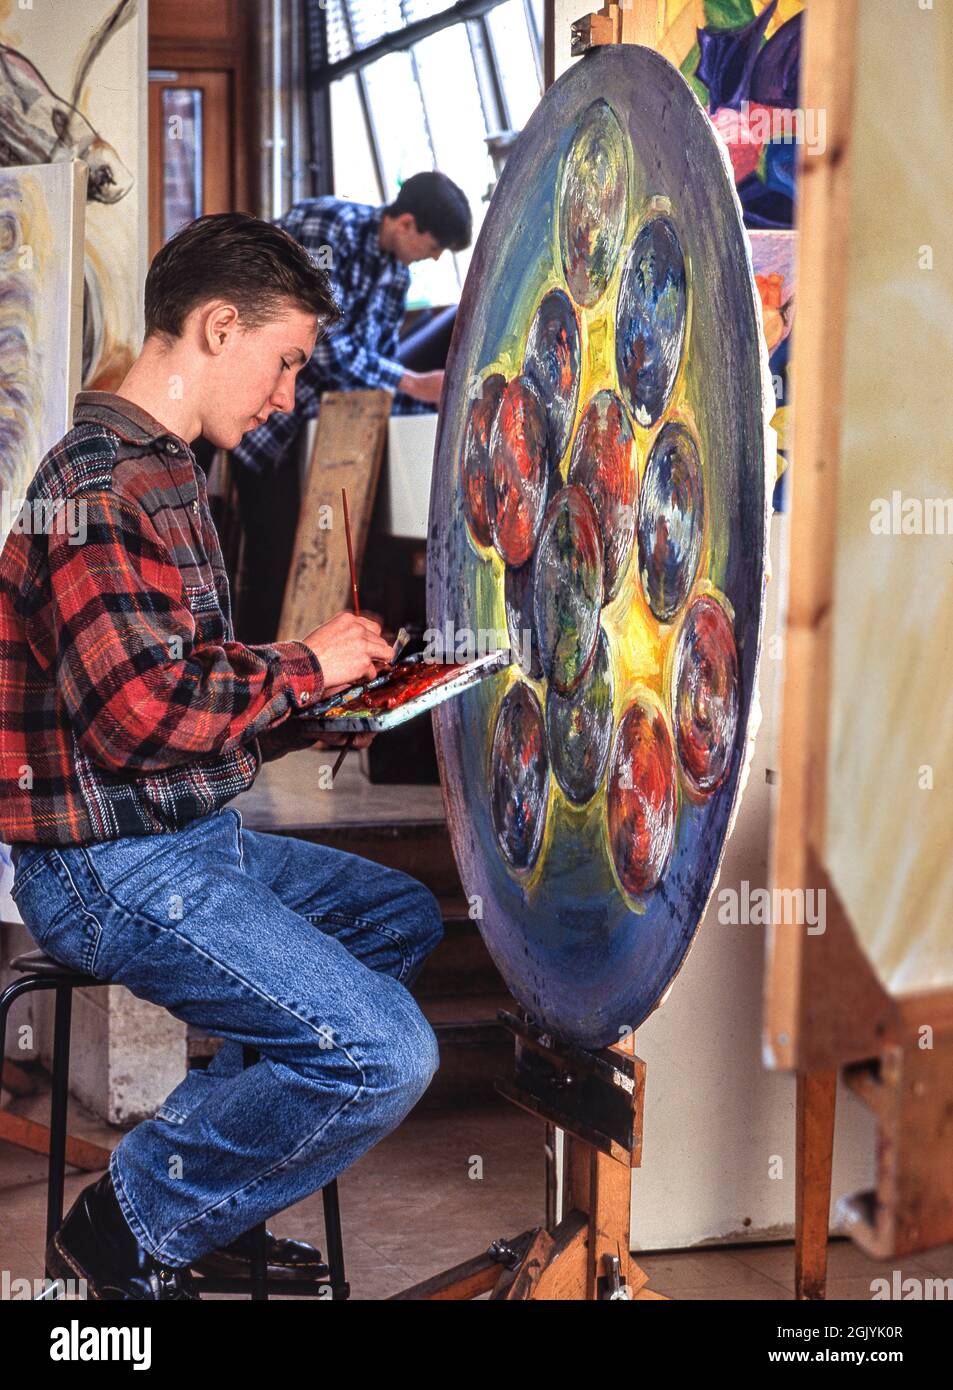 Kunstklasse mit einem Schüler mit 15-17 Jahren Oberstufe, der seinen expressiven, modernen, kreisförmigen, in Öl gemalten Kunstwerken einen letzten Schliff verleiht Stockfoto